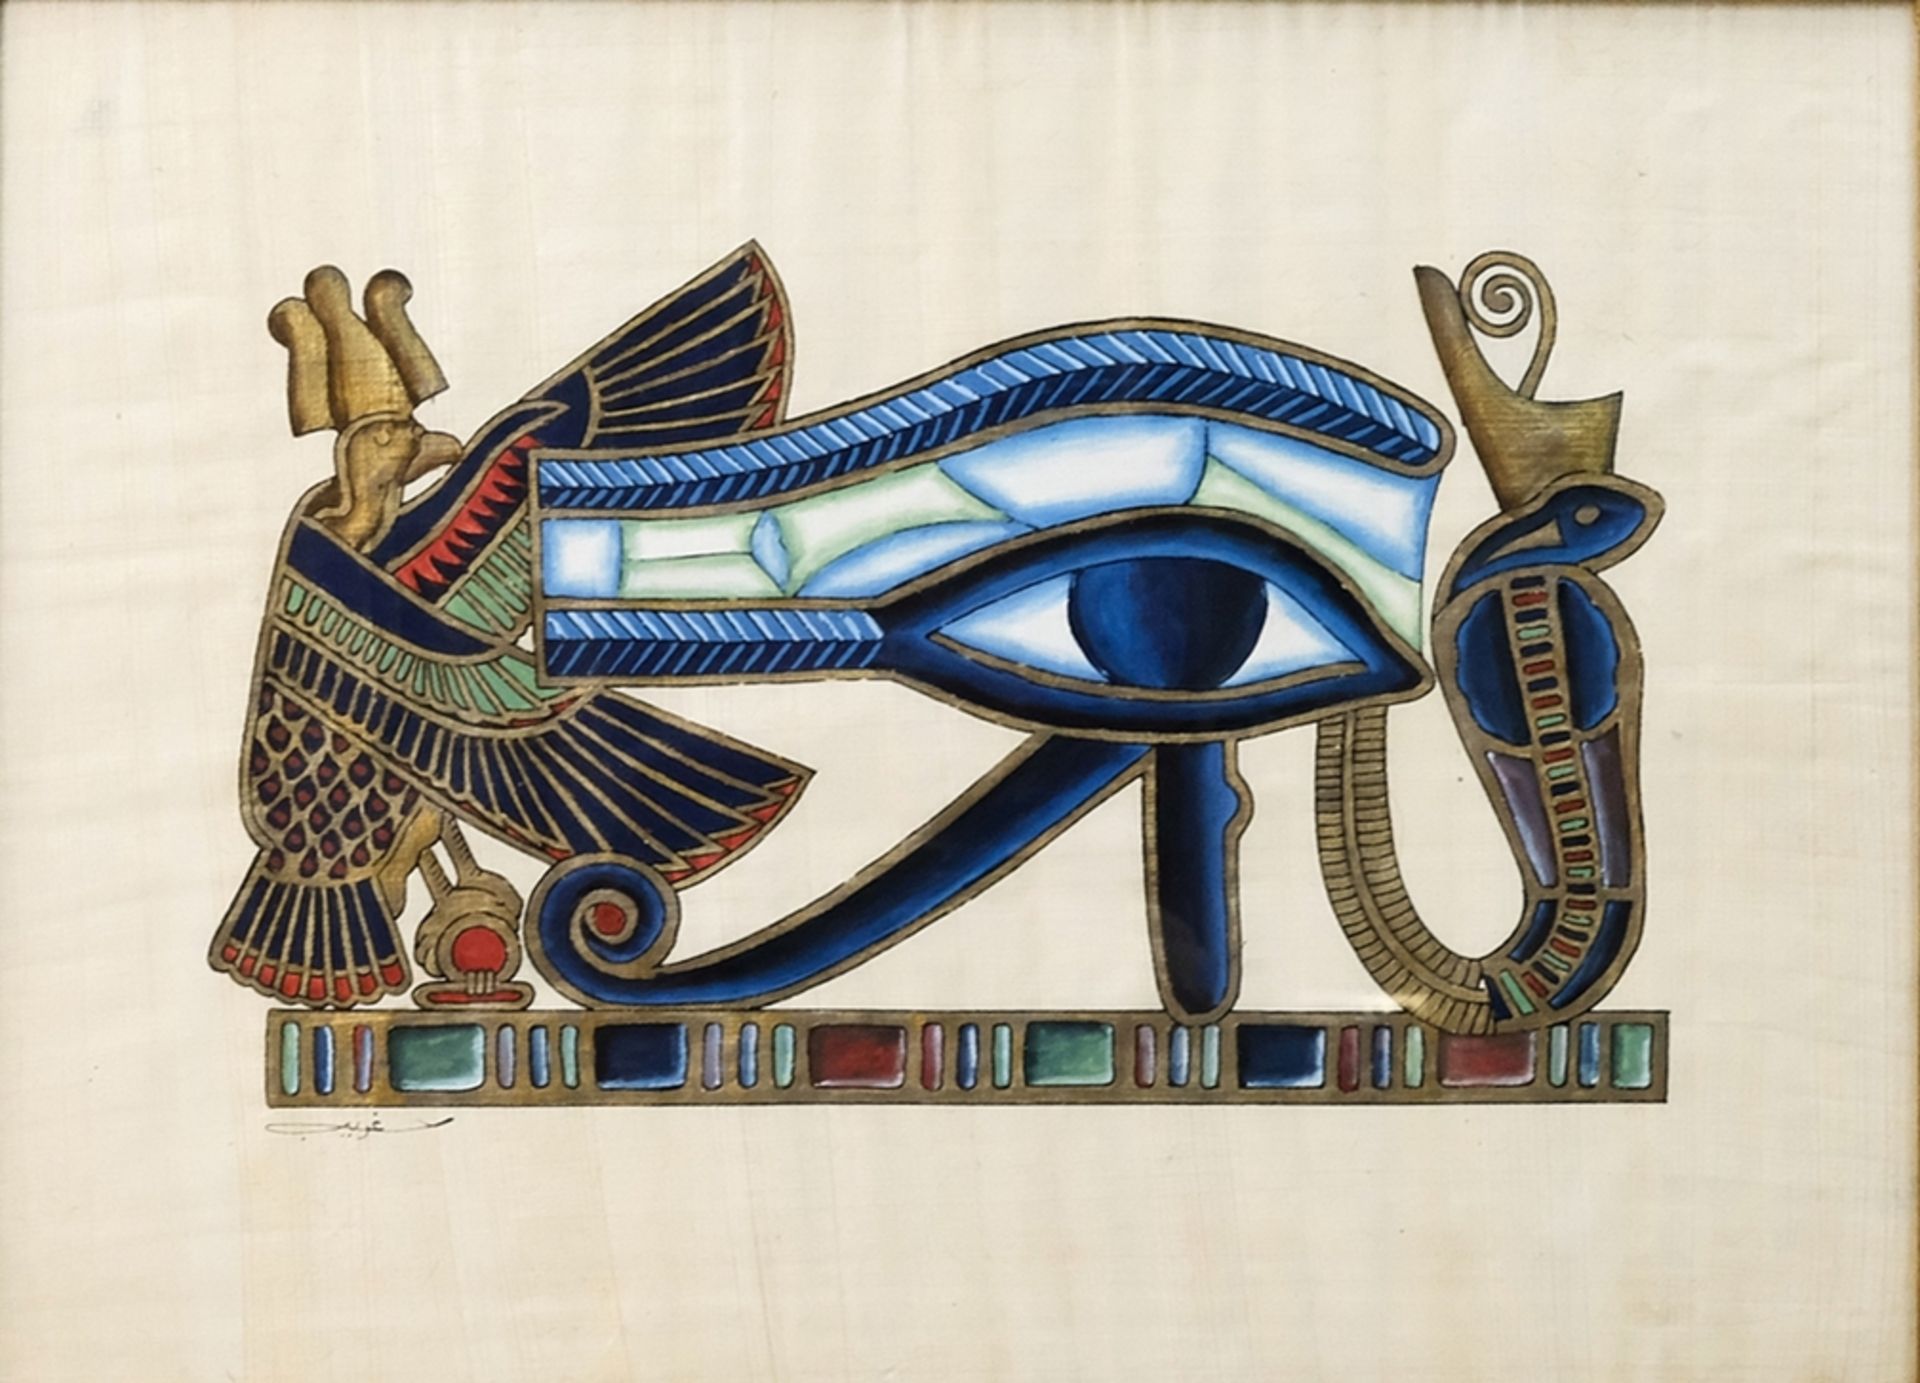 Unbekannt (20. Jahrhundert) Auge des Horus, Deckfarben und Goldfarbe auf Papyrus.